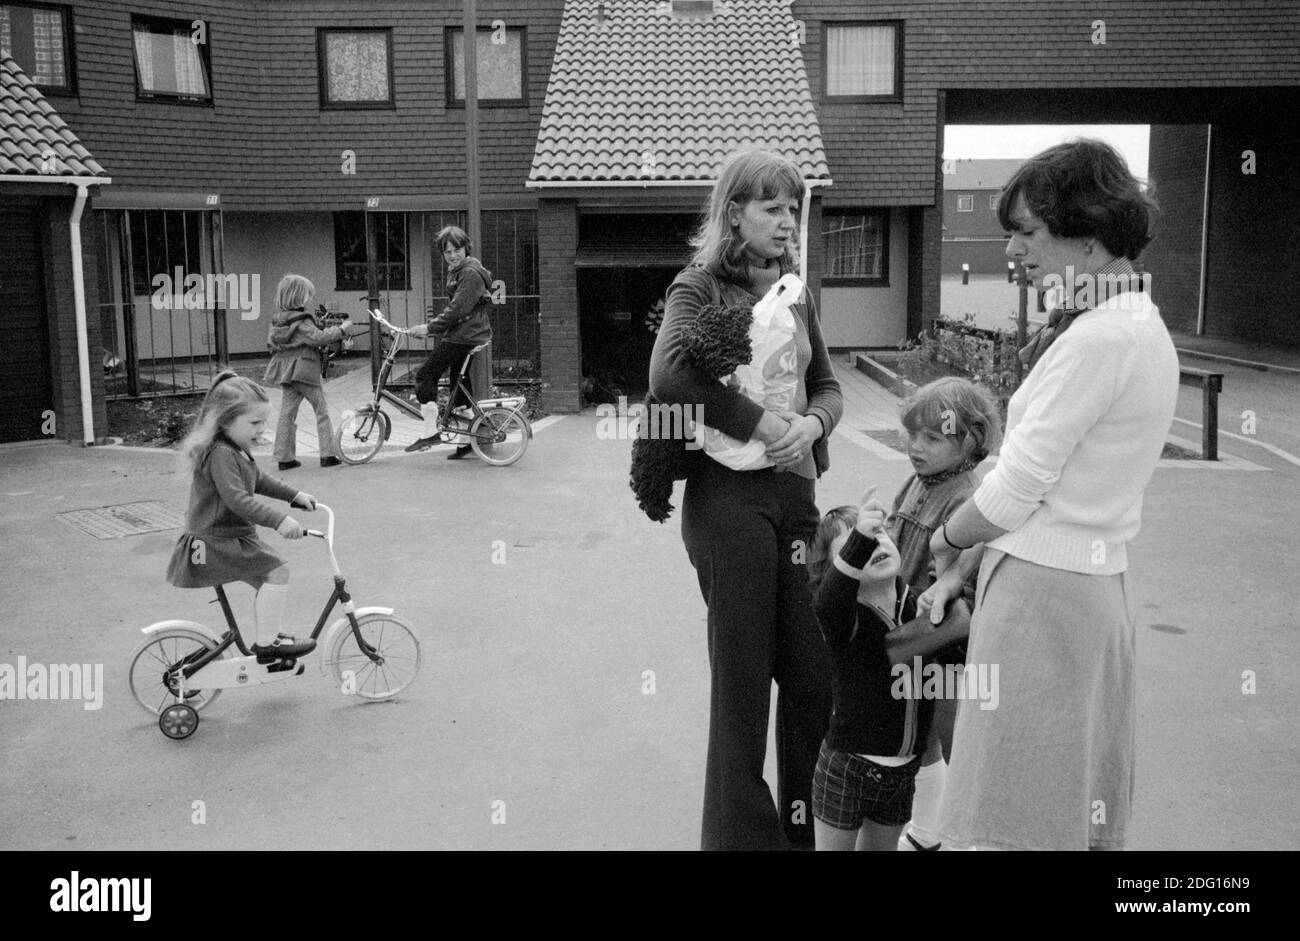 Wohnsiedlung aus den 1970er Jahren Großbritannien. Zwei einheimische Frauen mit Kindern unterhalten sich in der autofreien Straße. Kinder spielen auf ihren Fahrrädern. 1977 England. Milton Keynes ist eine neue Stadt, eine moderne Wohnsiedlung Buckinghamshire HOMER SYKES Stockfoto